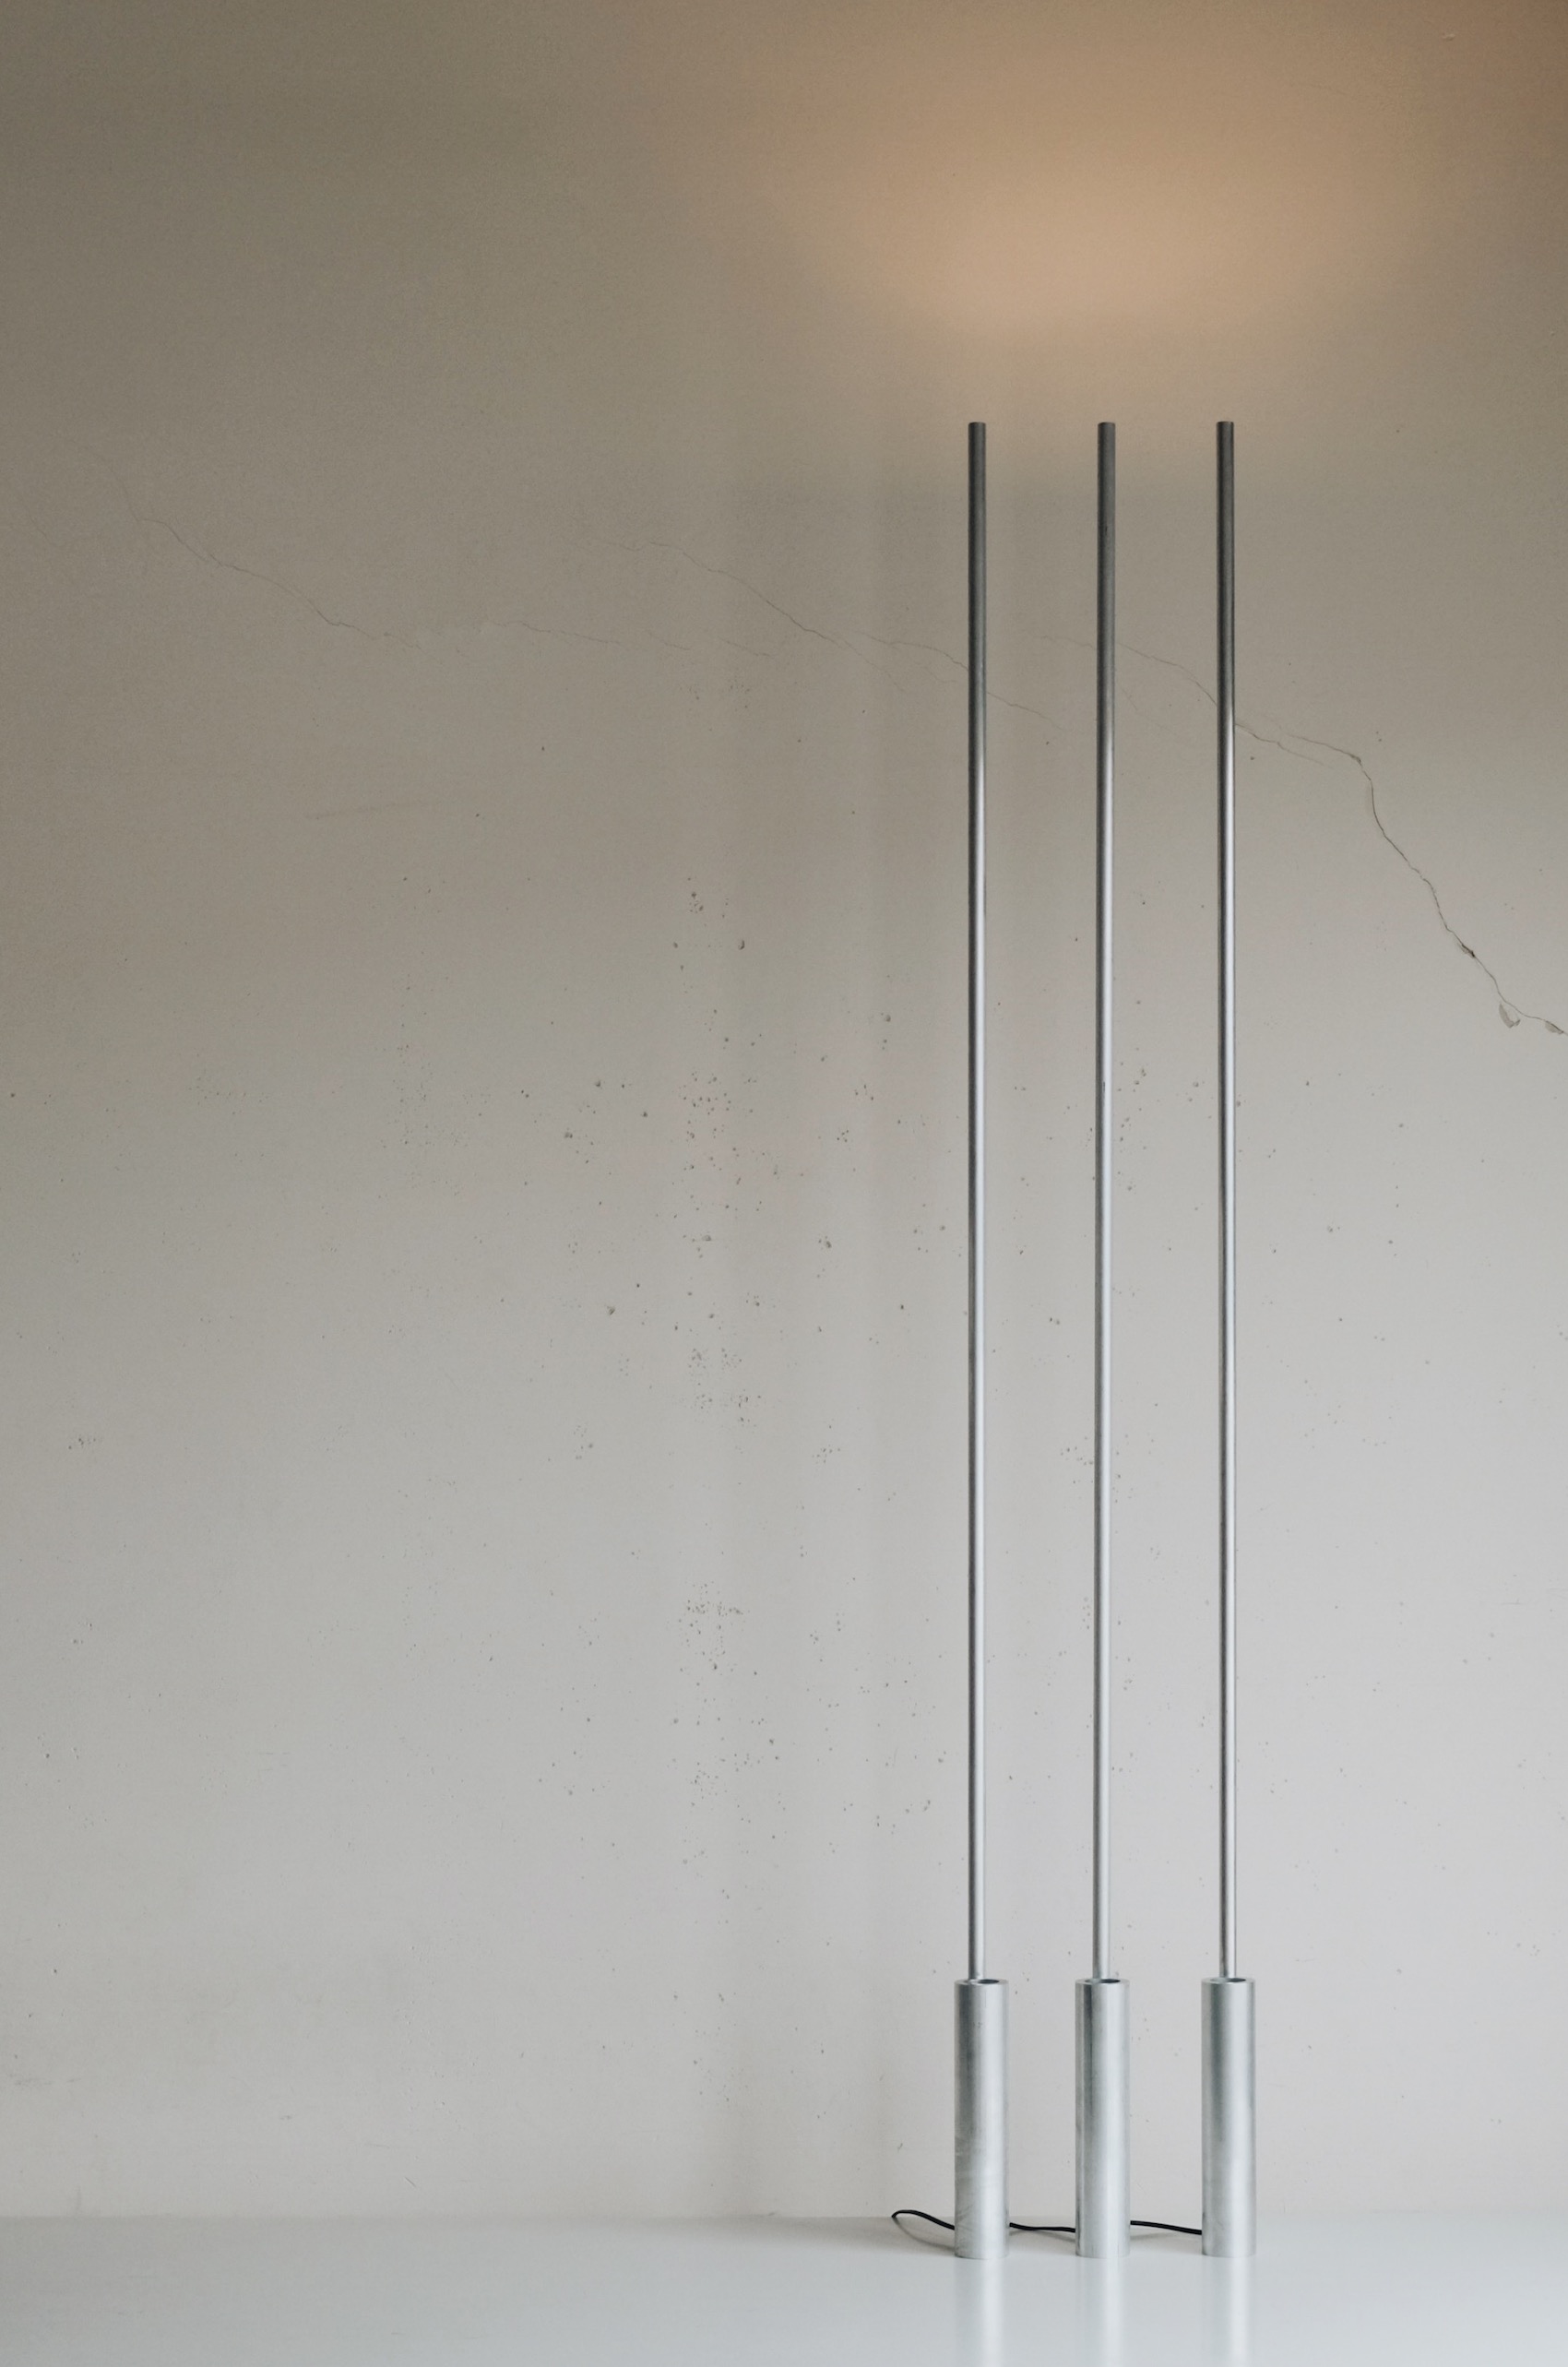 Minimalist Floor Lamp "Altitude" by Raphael Kadid